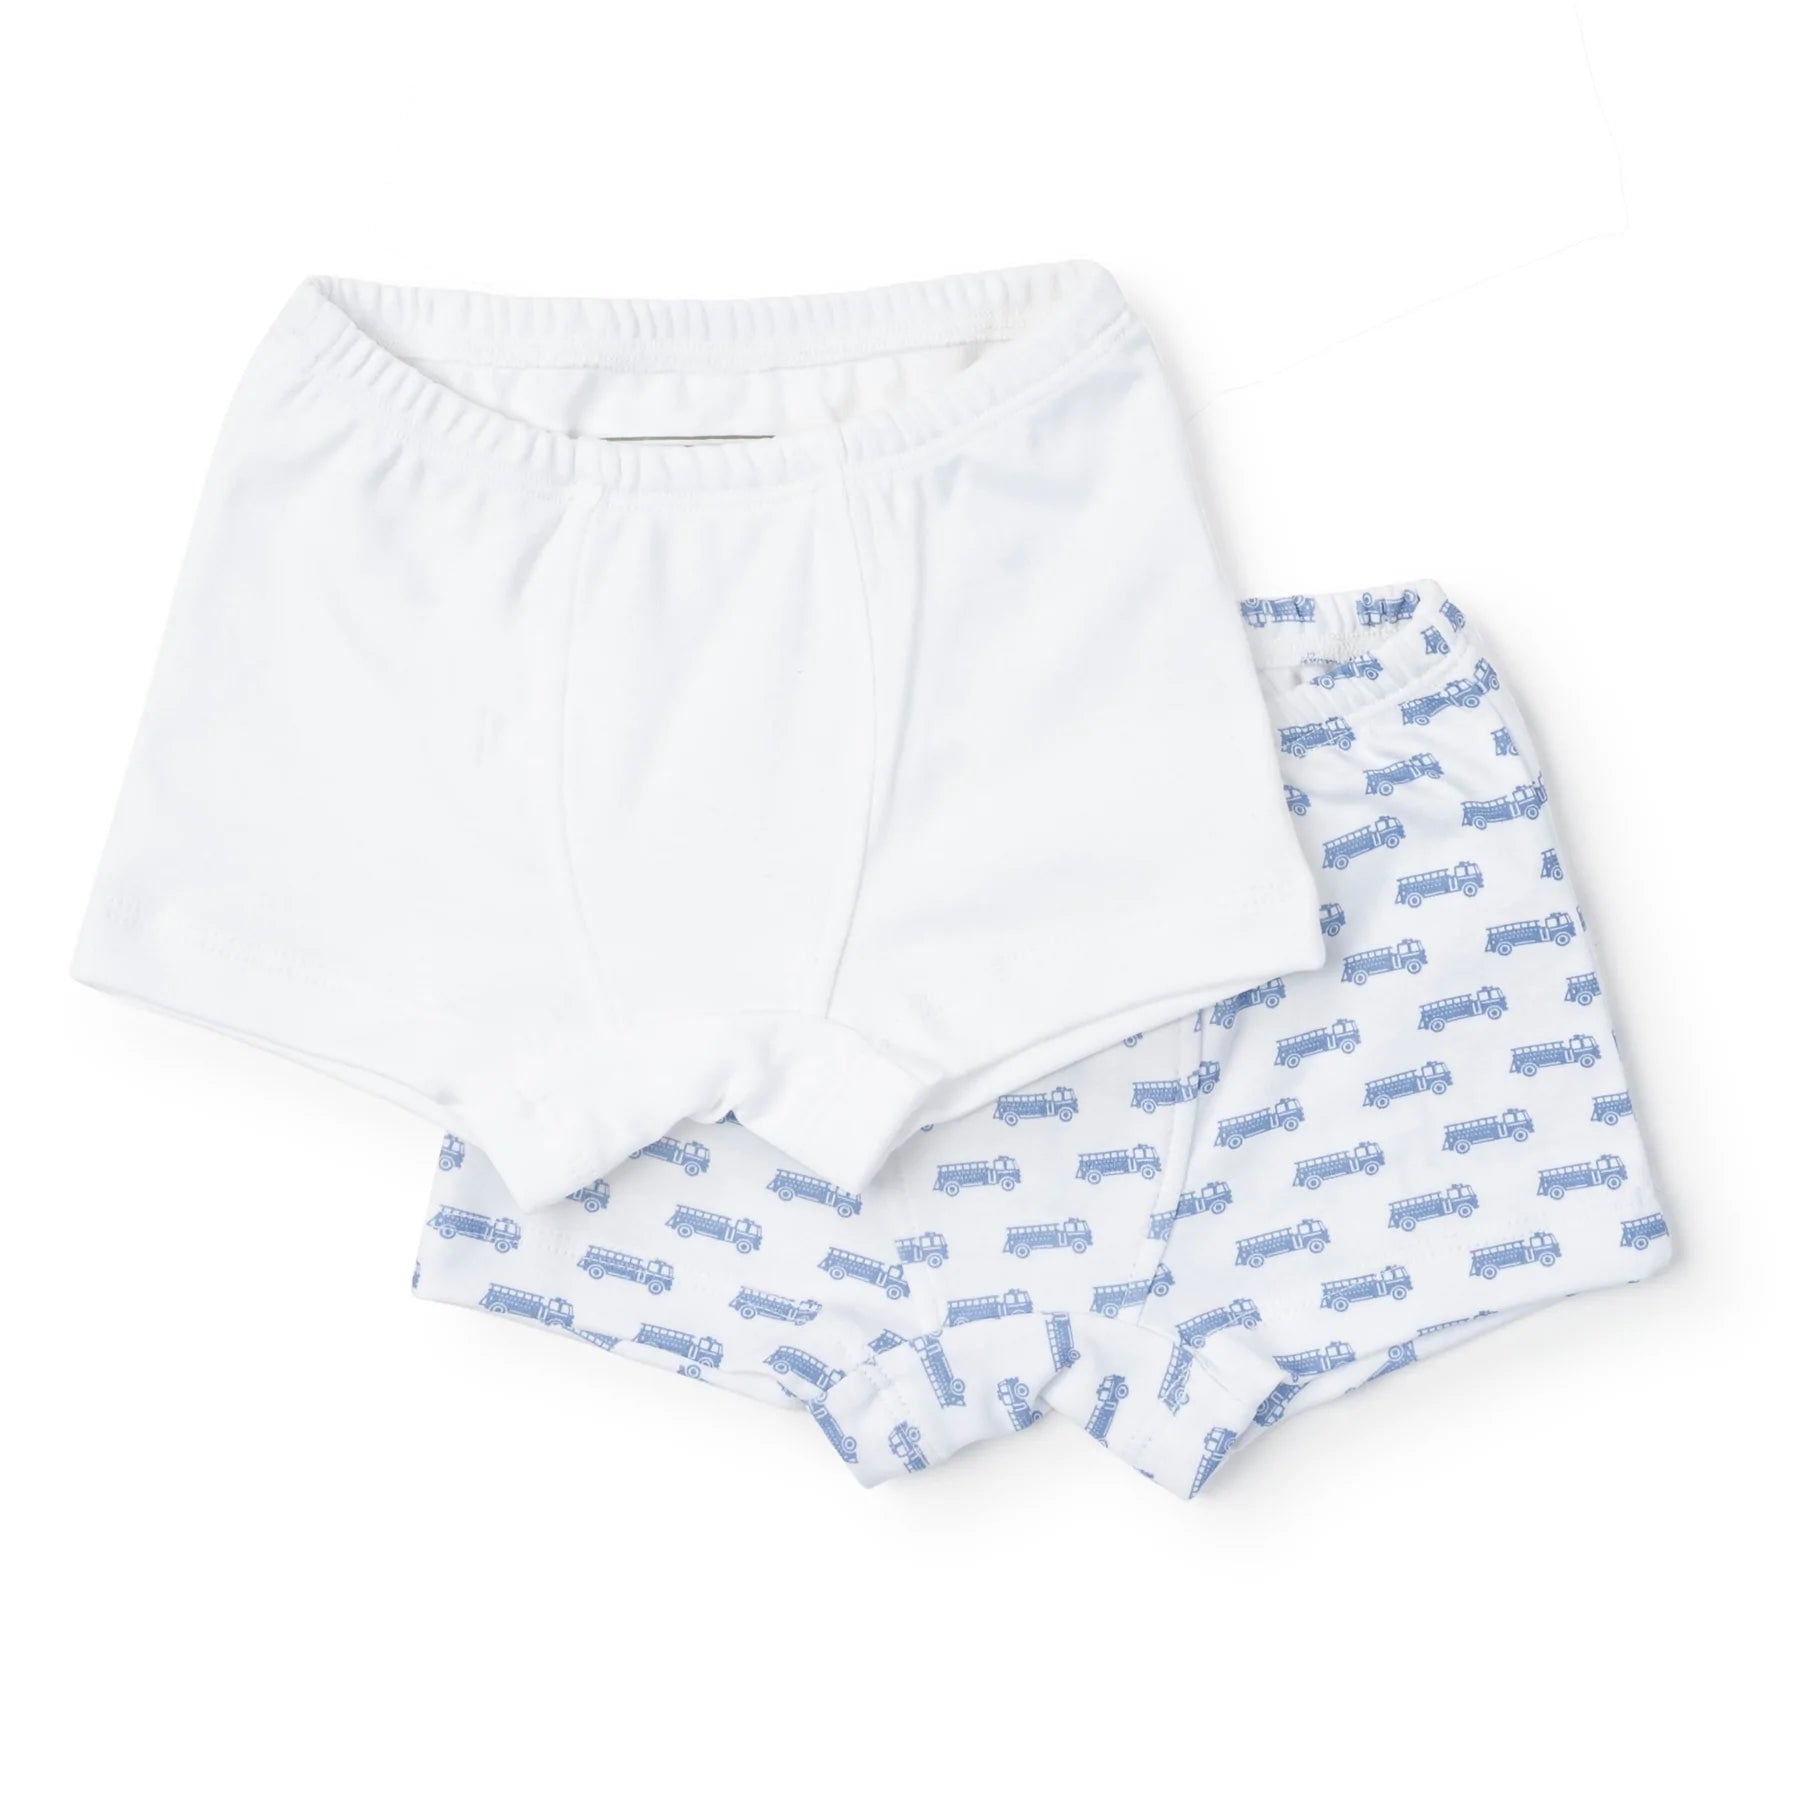 SALE James Boys' Pima Cotton Underwear Set - Football Game/White